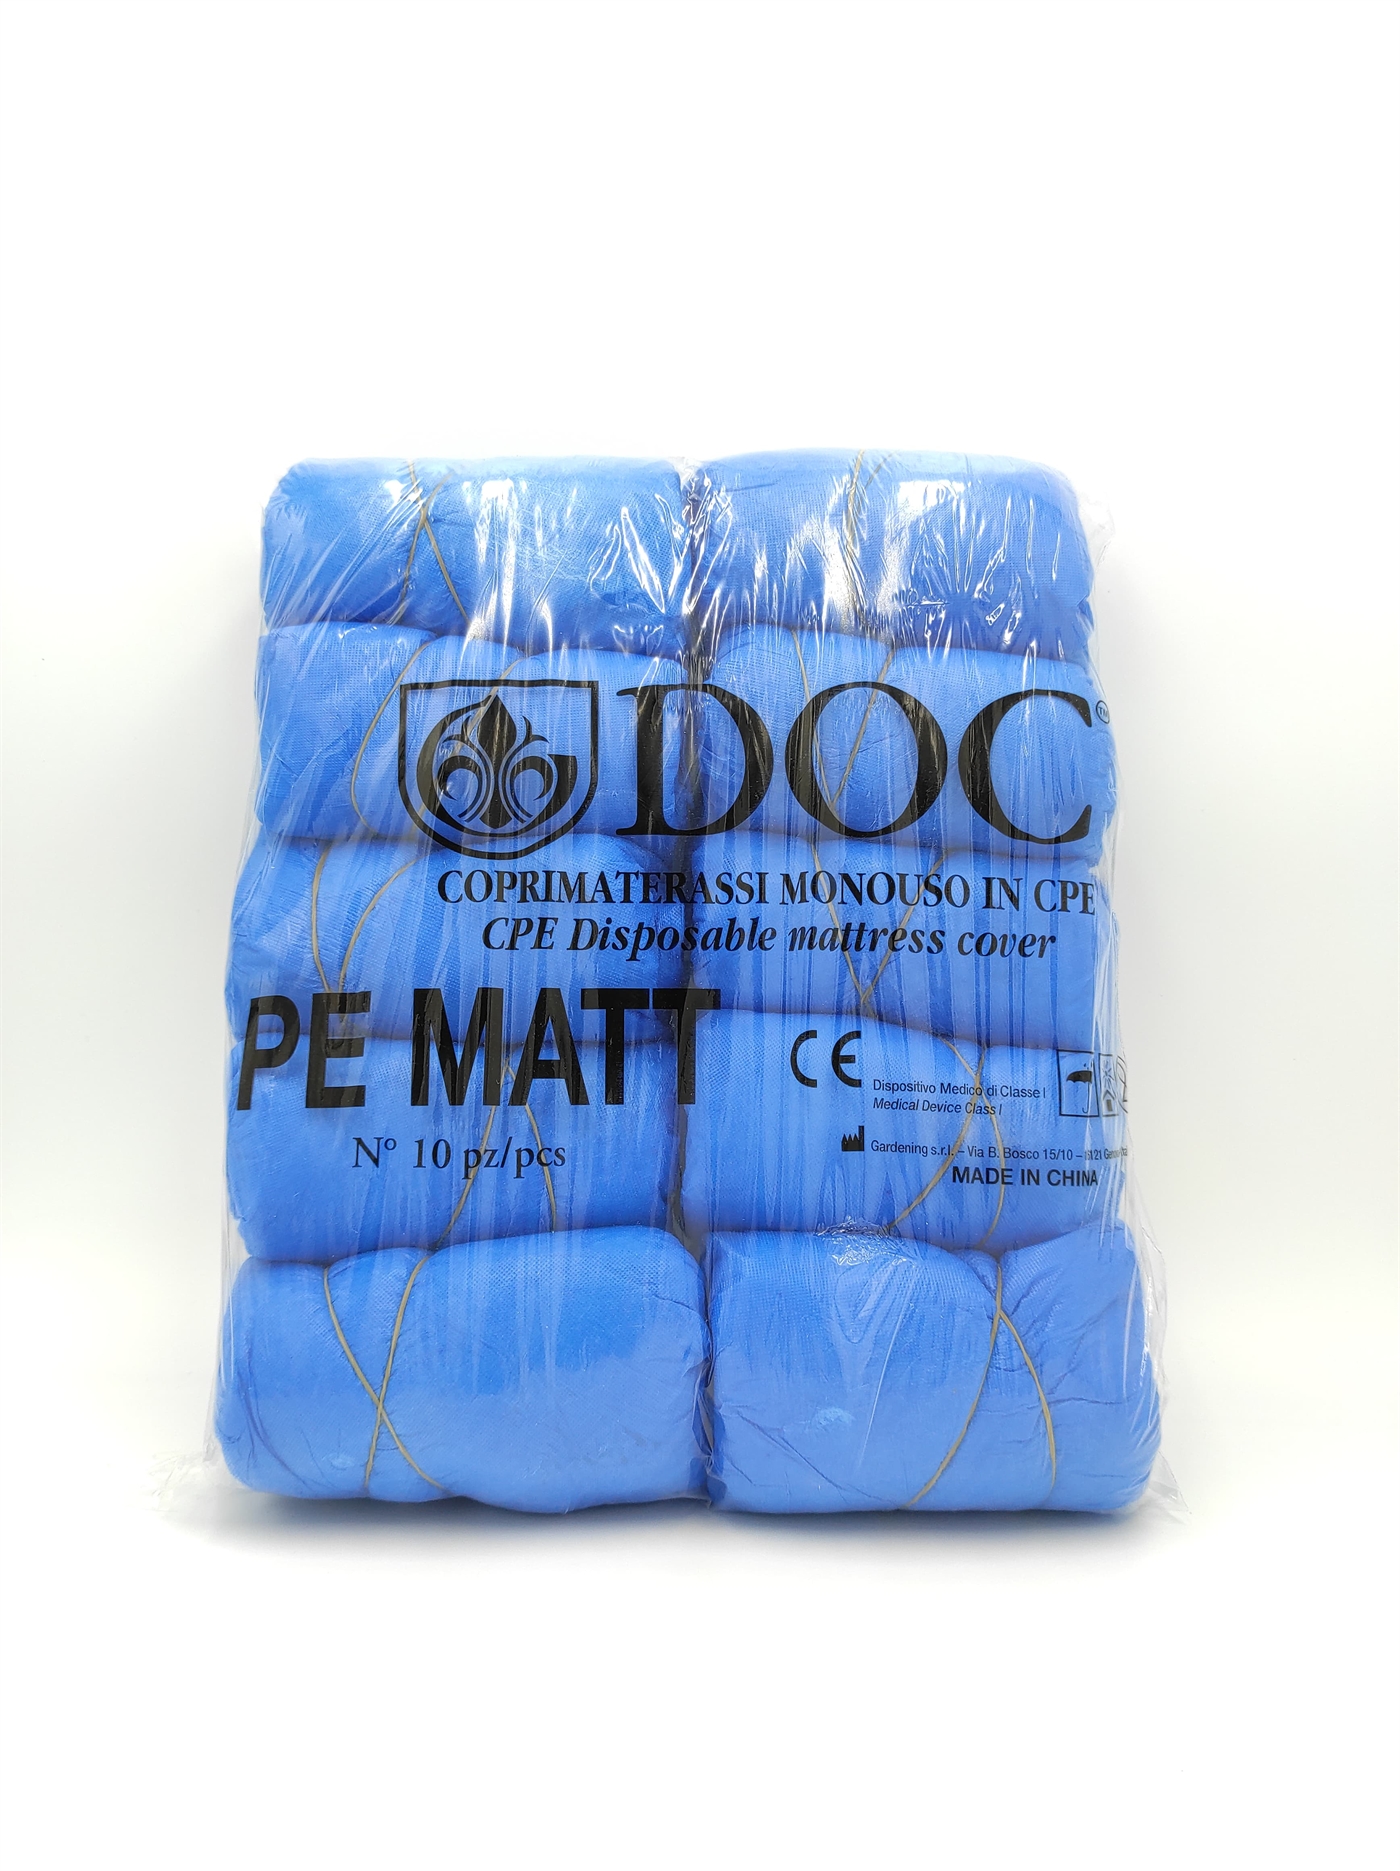 DOC Coprimaterasso monouso in CPE azzurro - confezione 10 pezzi in anteprima